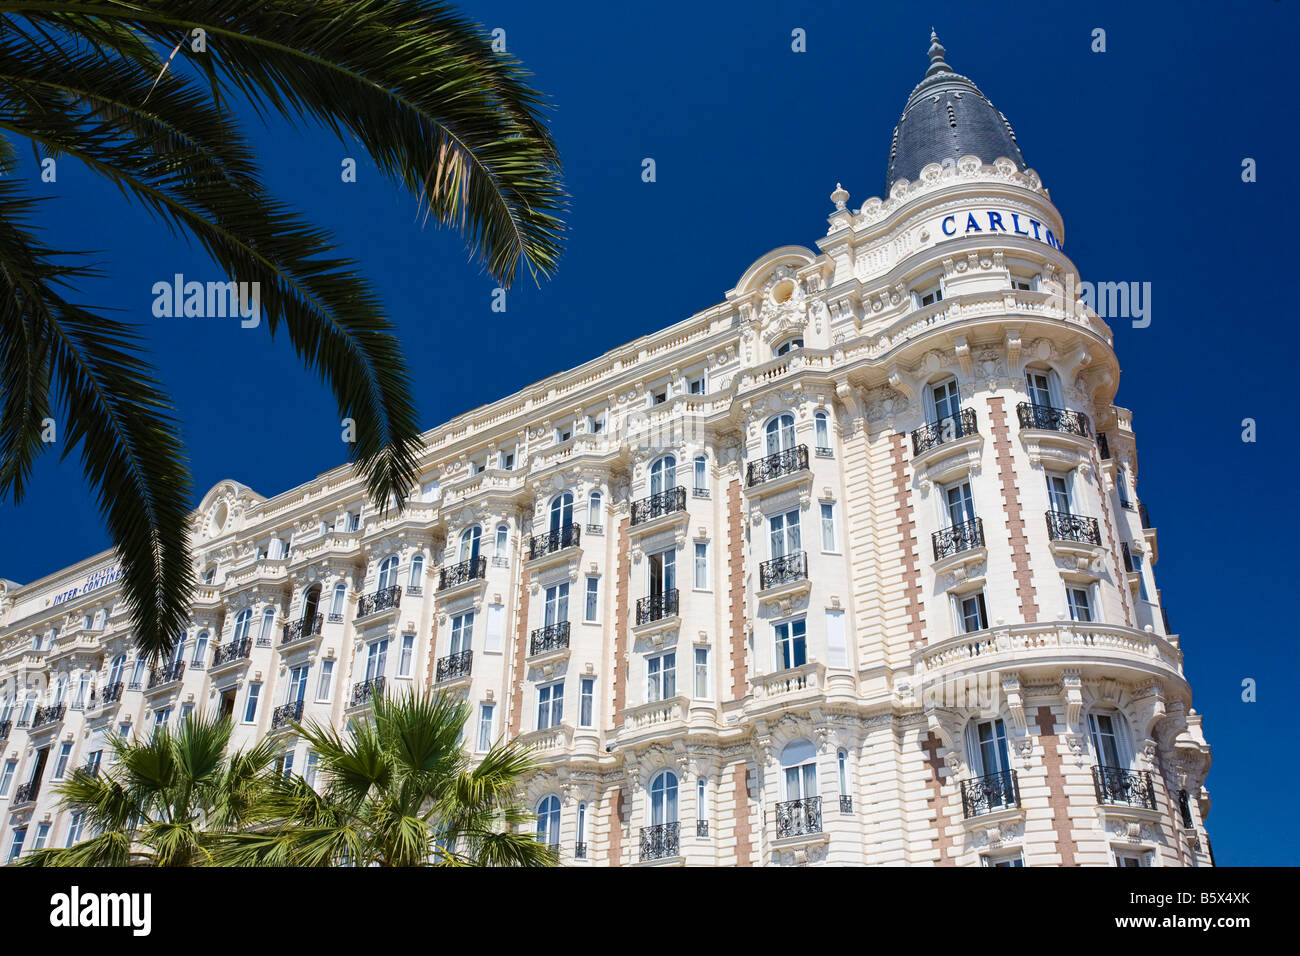 Hotel facade on Cannes promenade, Croissette Boulevard, Cote D Azur, France Stock Photo